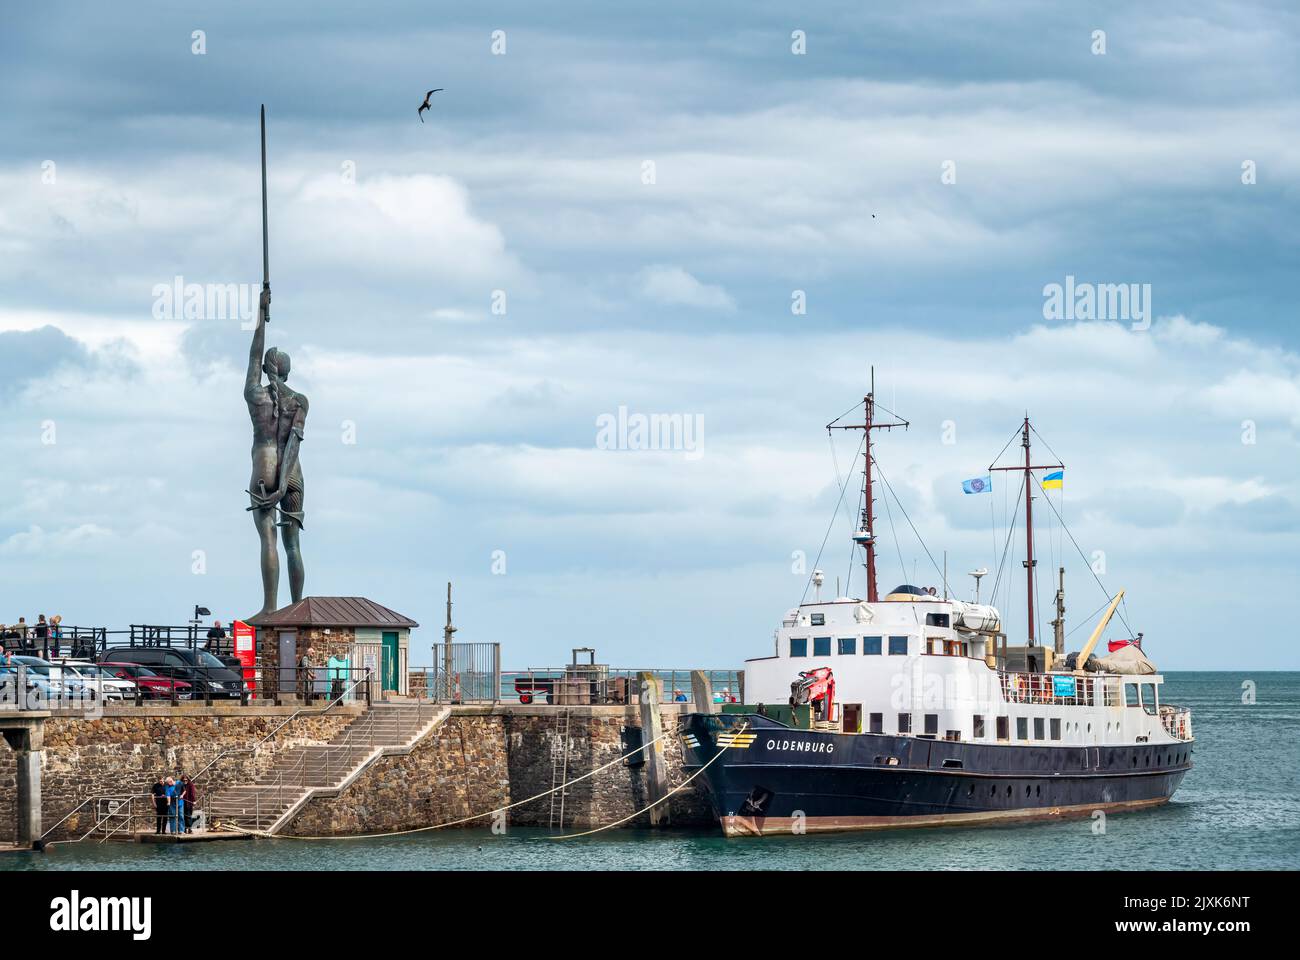 La nave di rifornimento di Lundy Island e la nave passeggeri MV Oldenburg ormeggiate lungo la banchina, con la famosa statua Damien Hirst Verity sullo sfondo Foto Stock